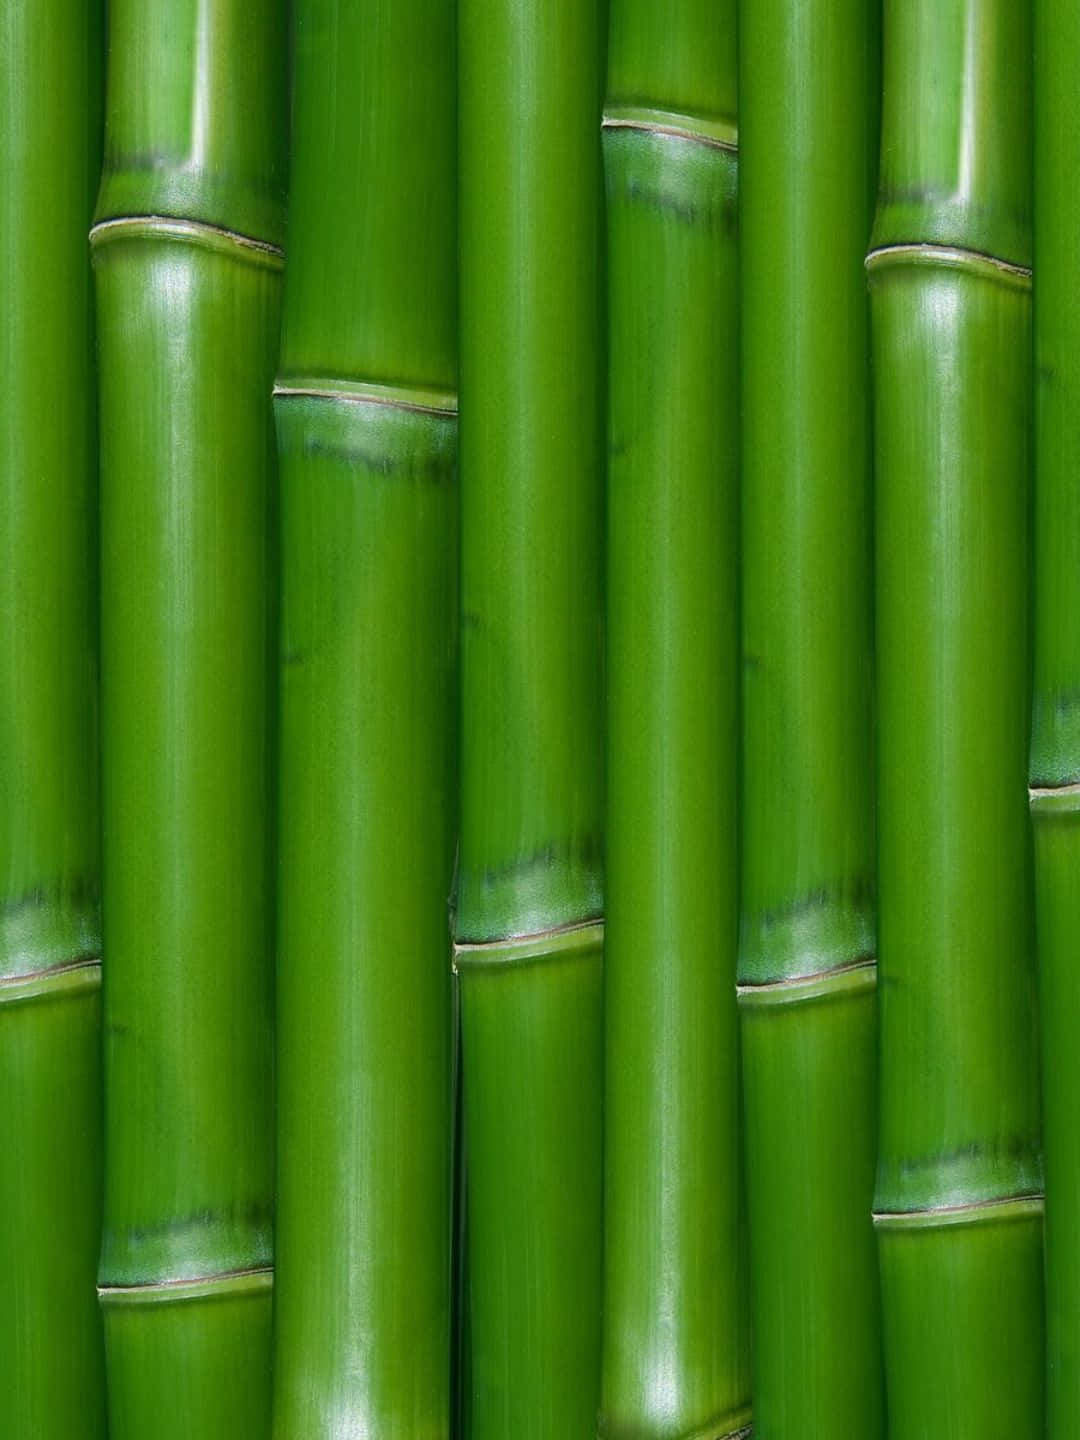 Fundode Tela De Bambu 1440p Com Caules Verdes Brilhantes.